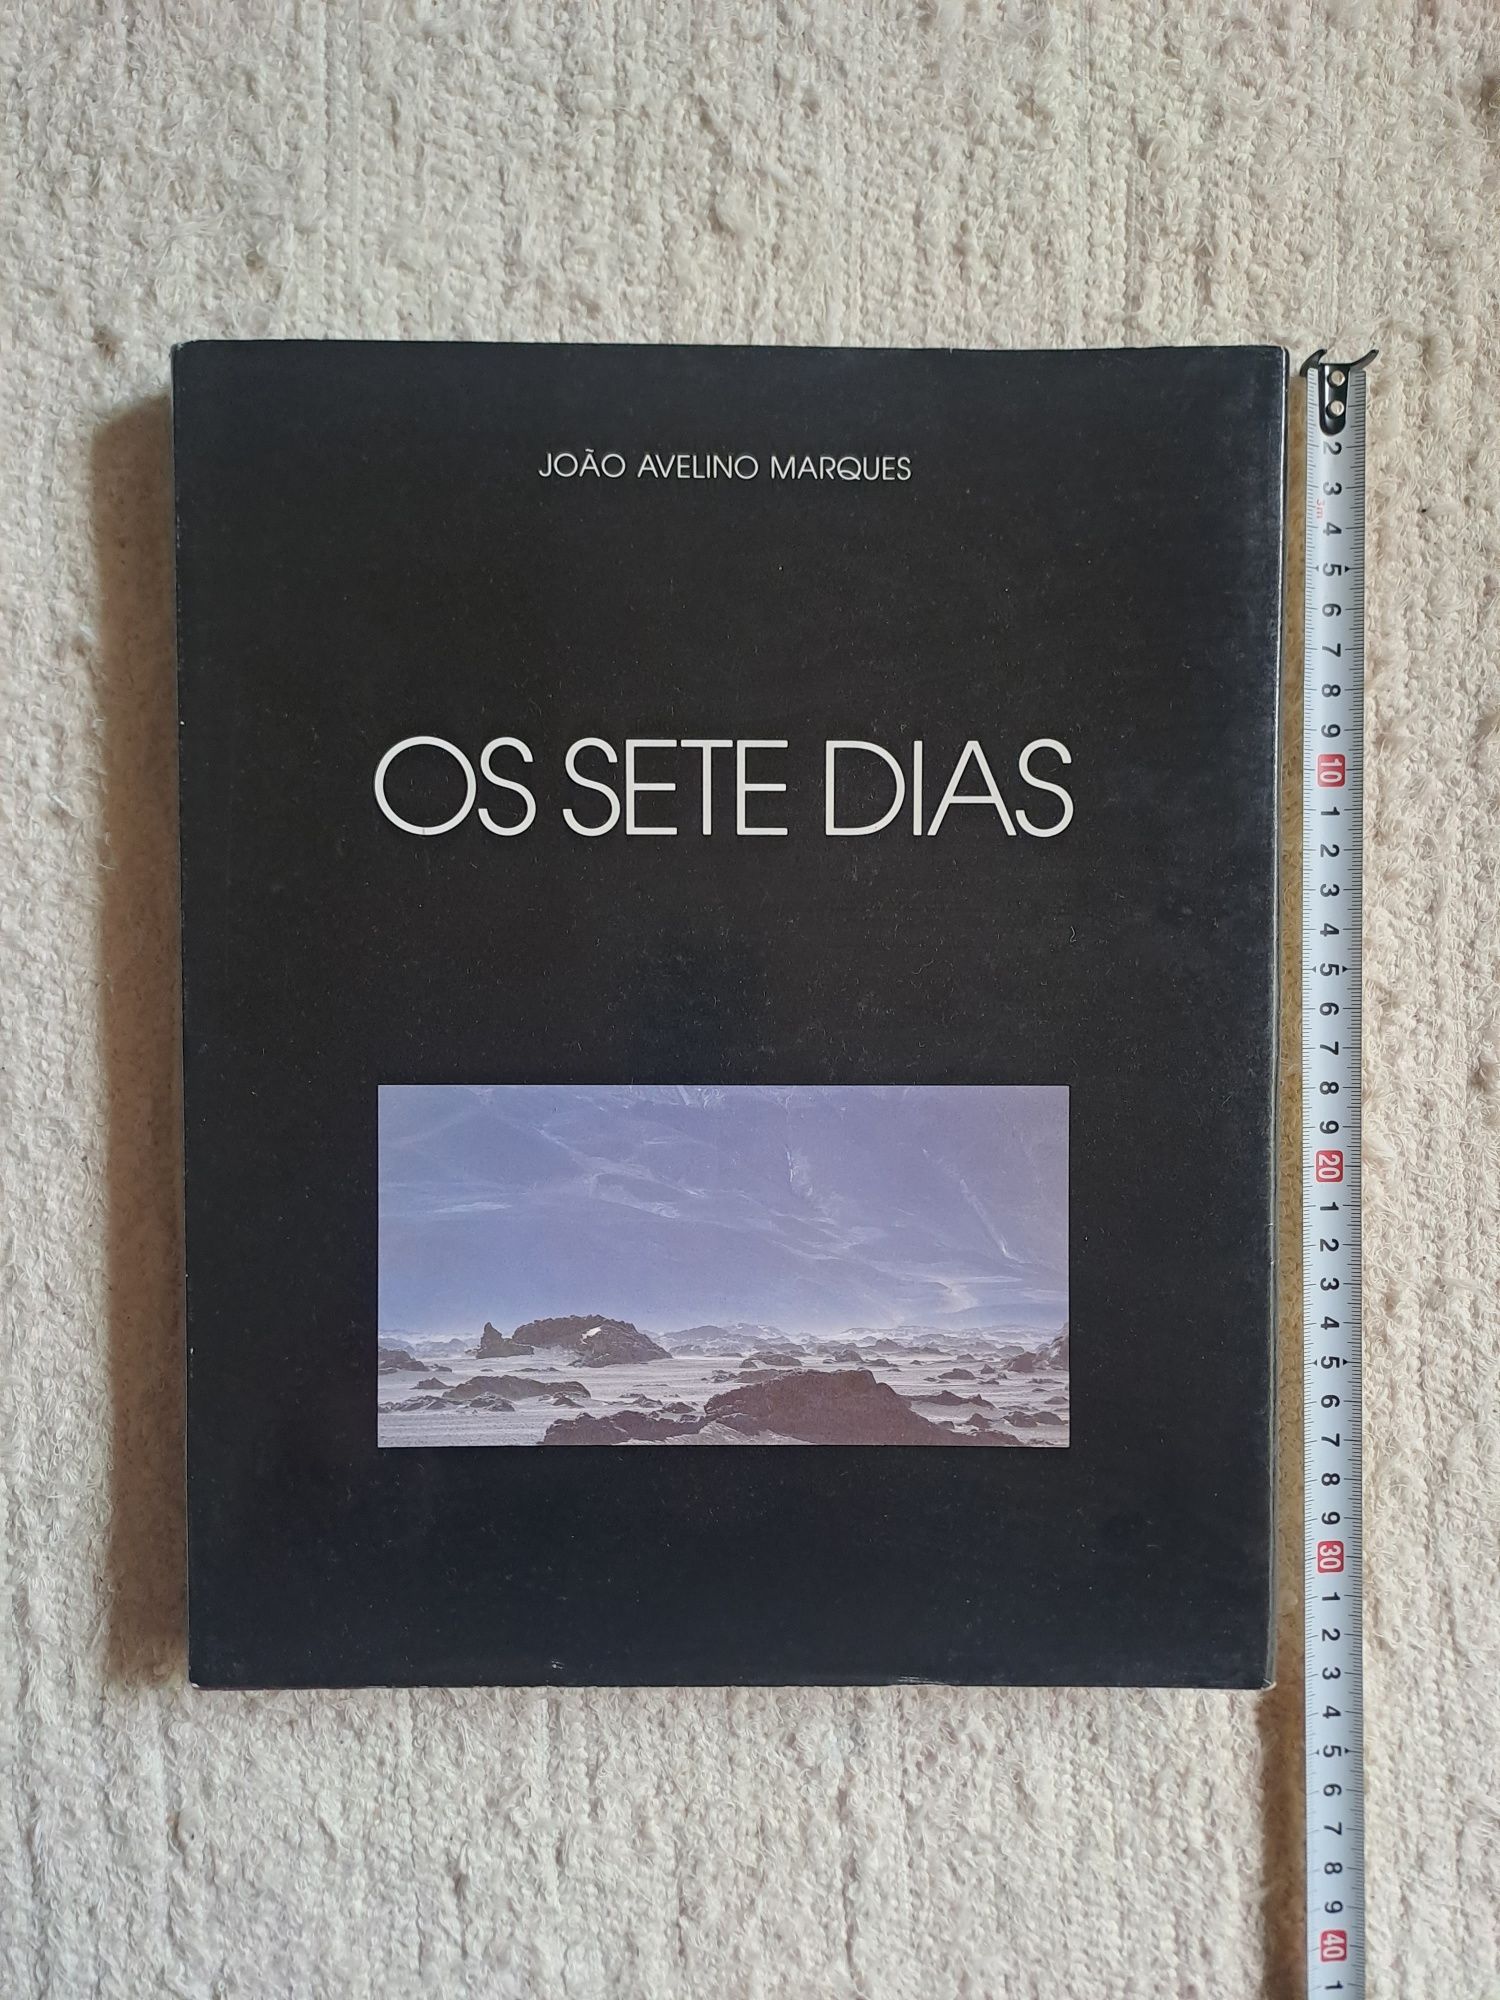 Livro de fotografia: "Os sete dias" de João Avelino Marques